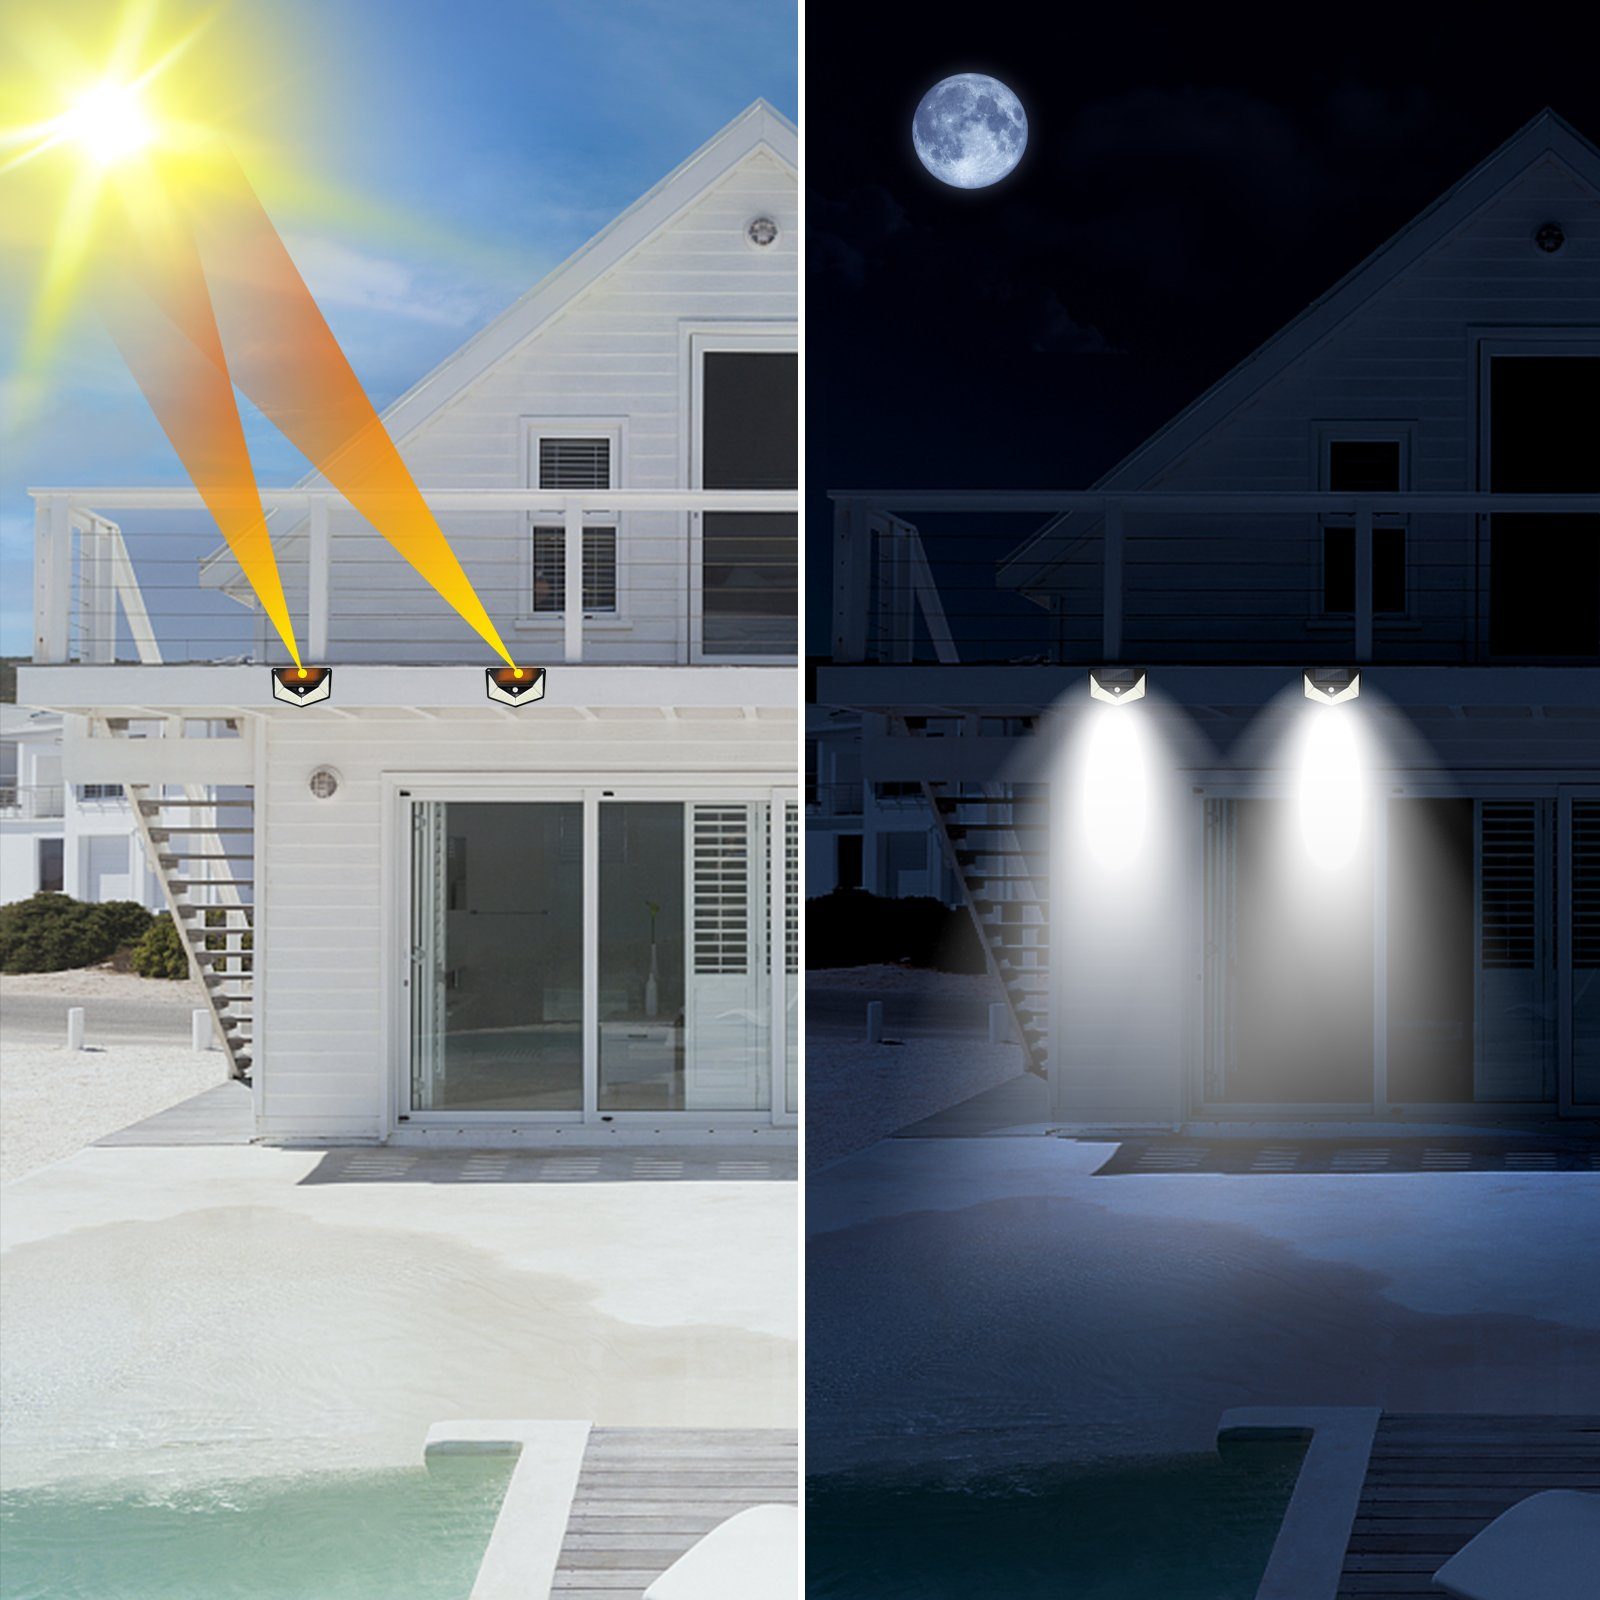 Solarstrahler Außenleuchte IP65 220pcs LED Außen-Wandleuchte SunJas Gartenlampe LED, LTBGD220, Solarleuchte